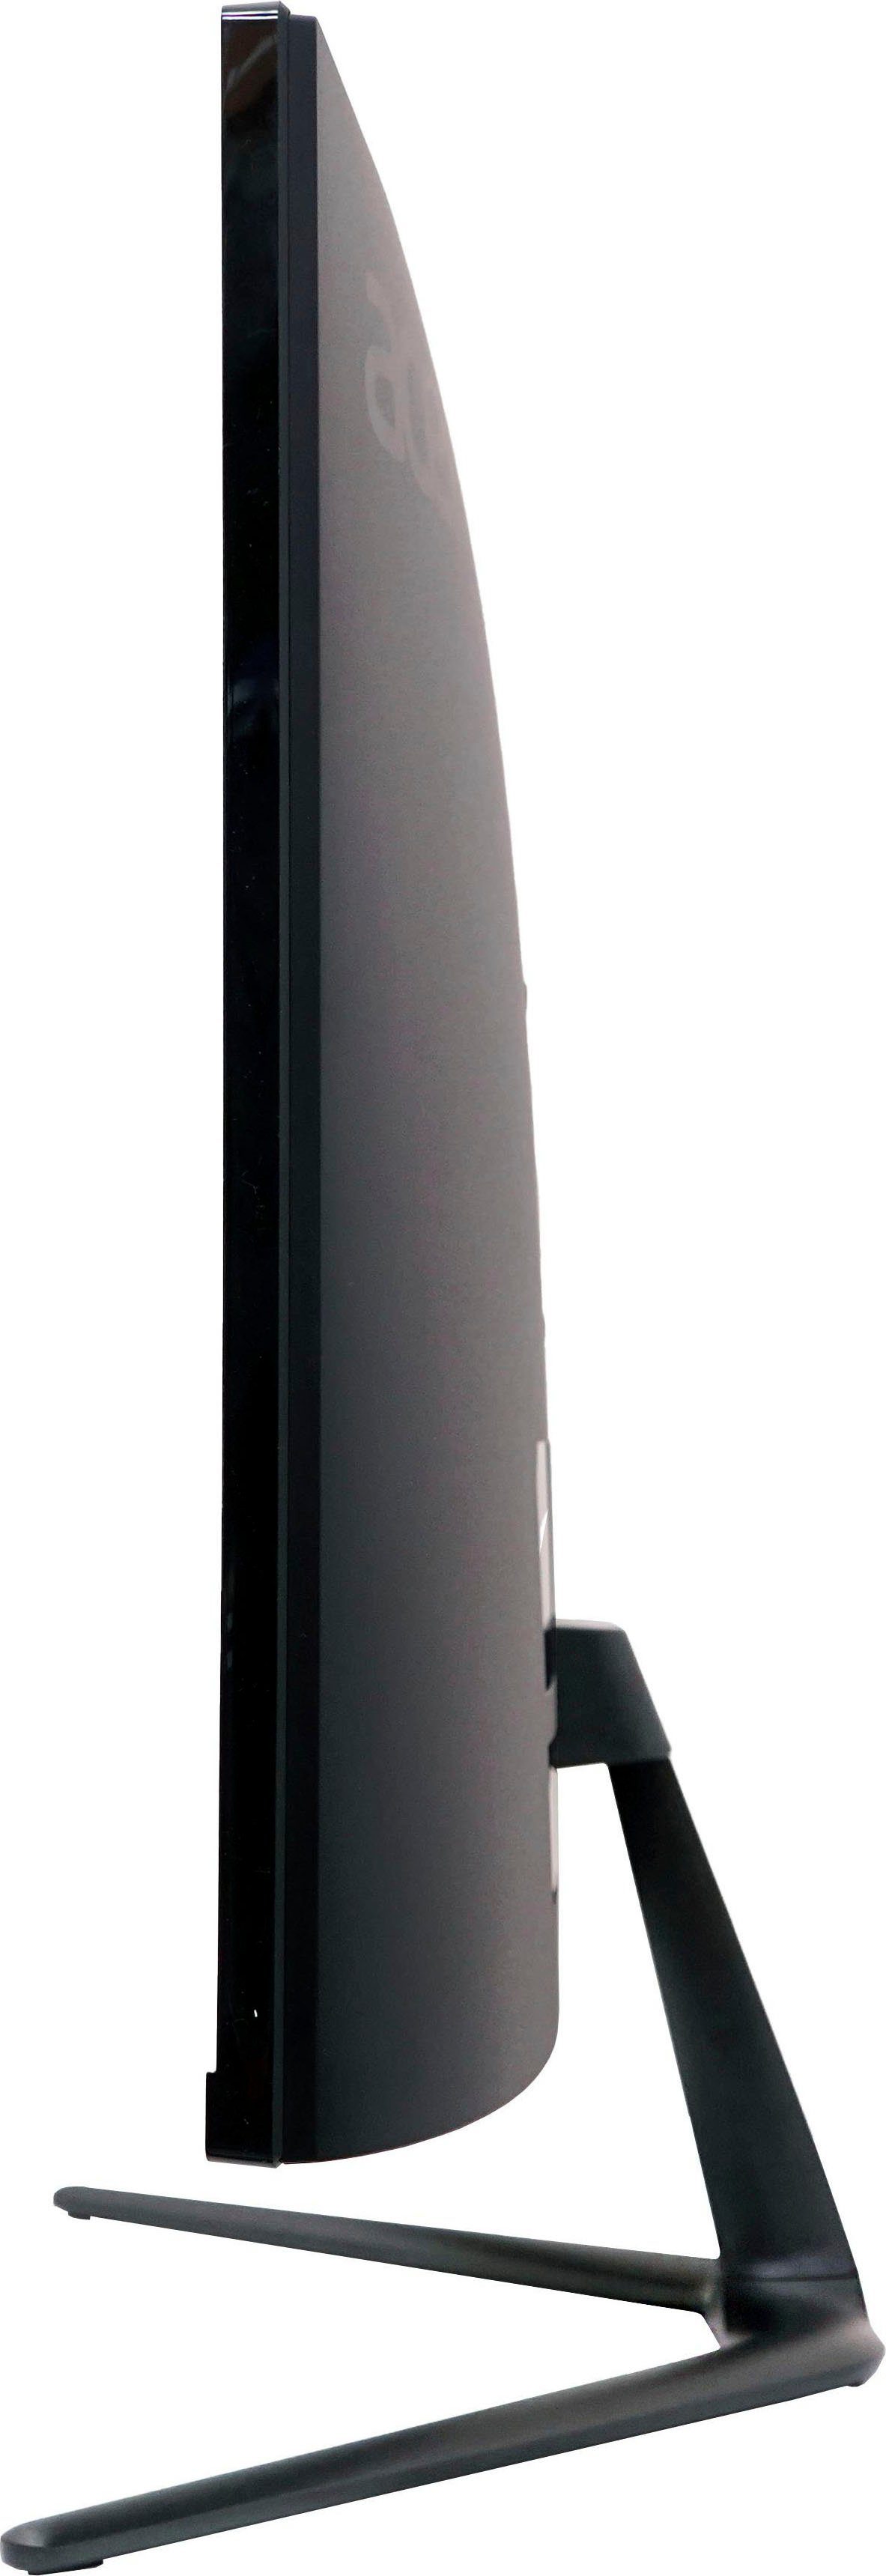 170 P2 (69 cm/27 1 ms 2560 WQHD, Acer x px, LED) Curved-Gaming-LED-Monitor VA Reaktionszeit, ED270U ", Nitro Hz, 1440